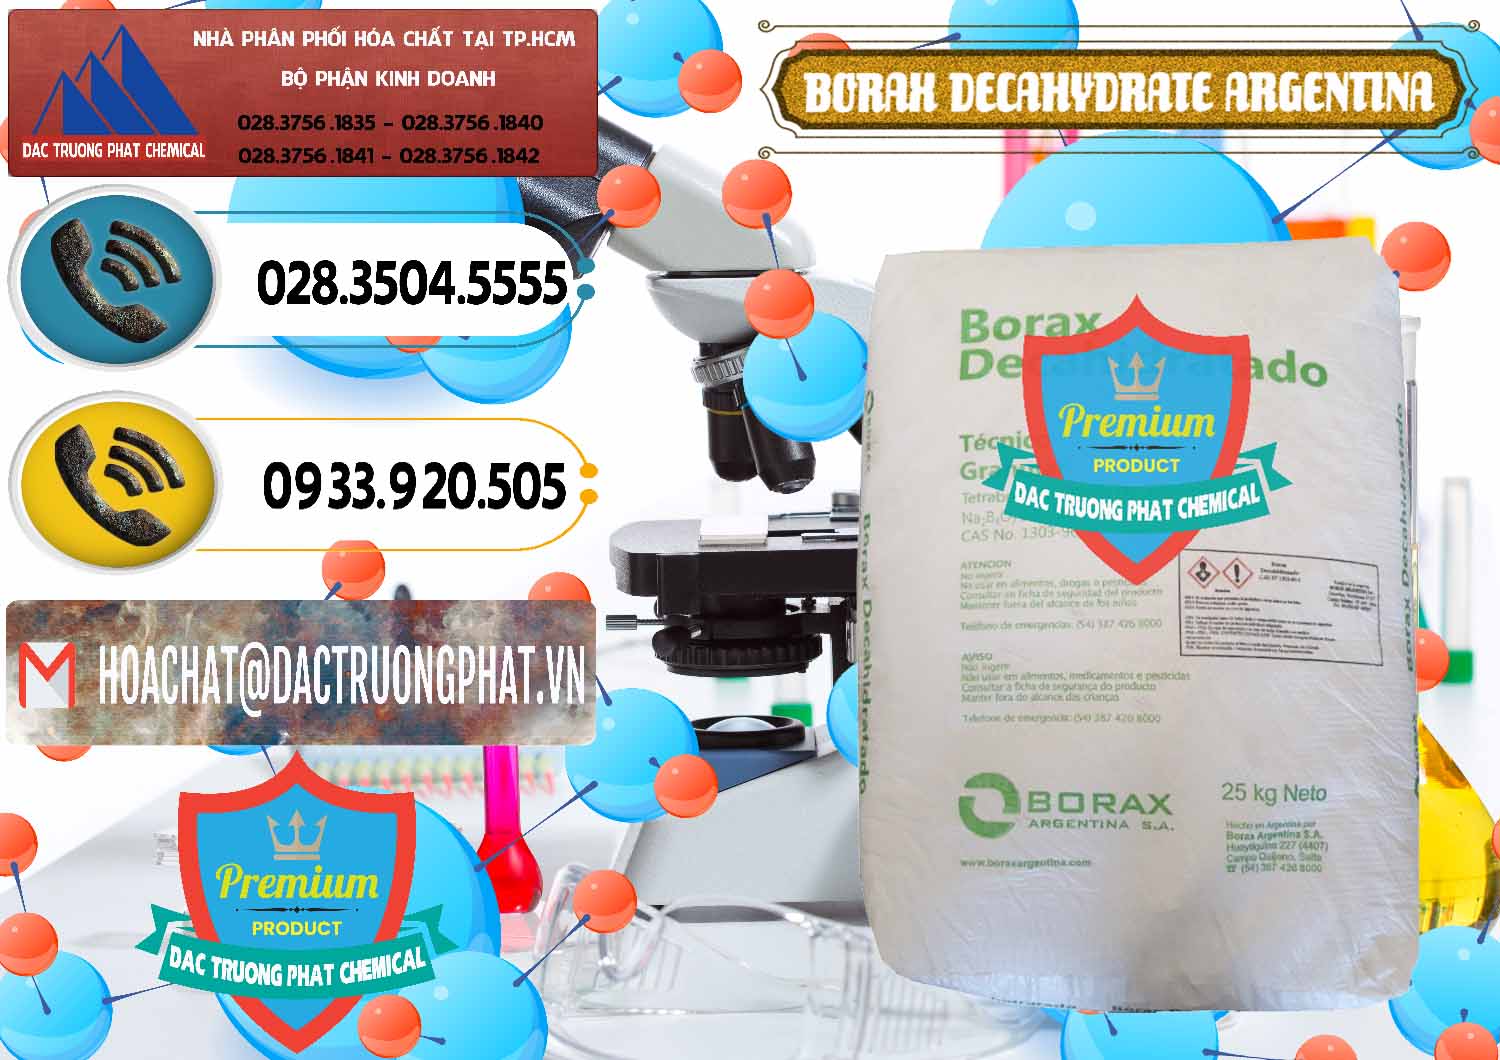 Nơi bán & cung ứng Borax Decahydrate Argentina - 0446 - Nhà cung cấp - phân phối hóa chất tại TP.HCM - hoachatdetnhuom.vn